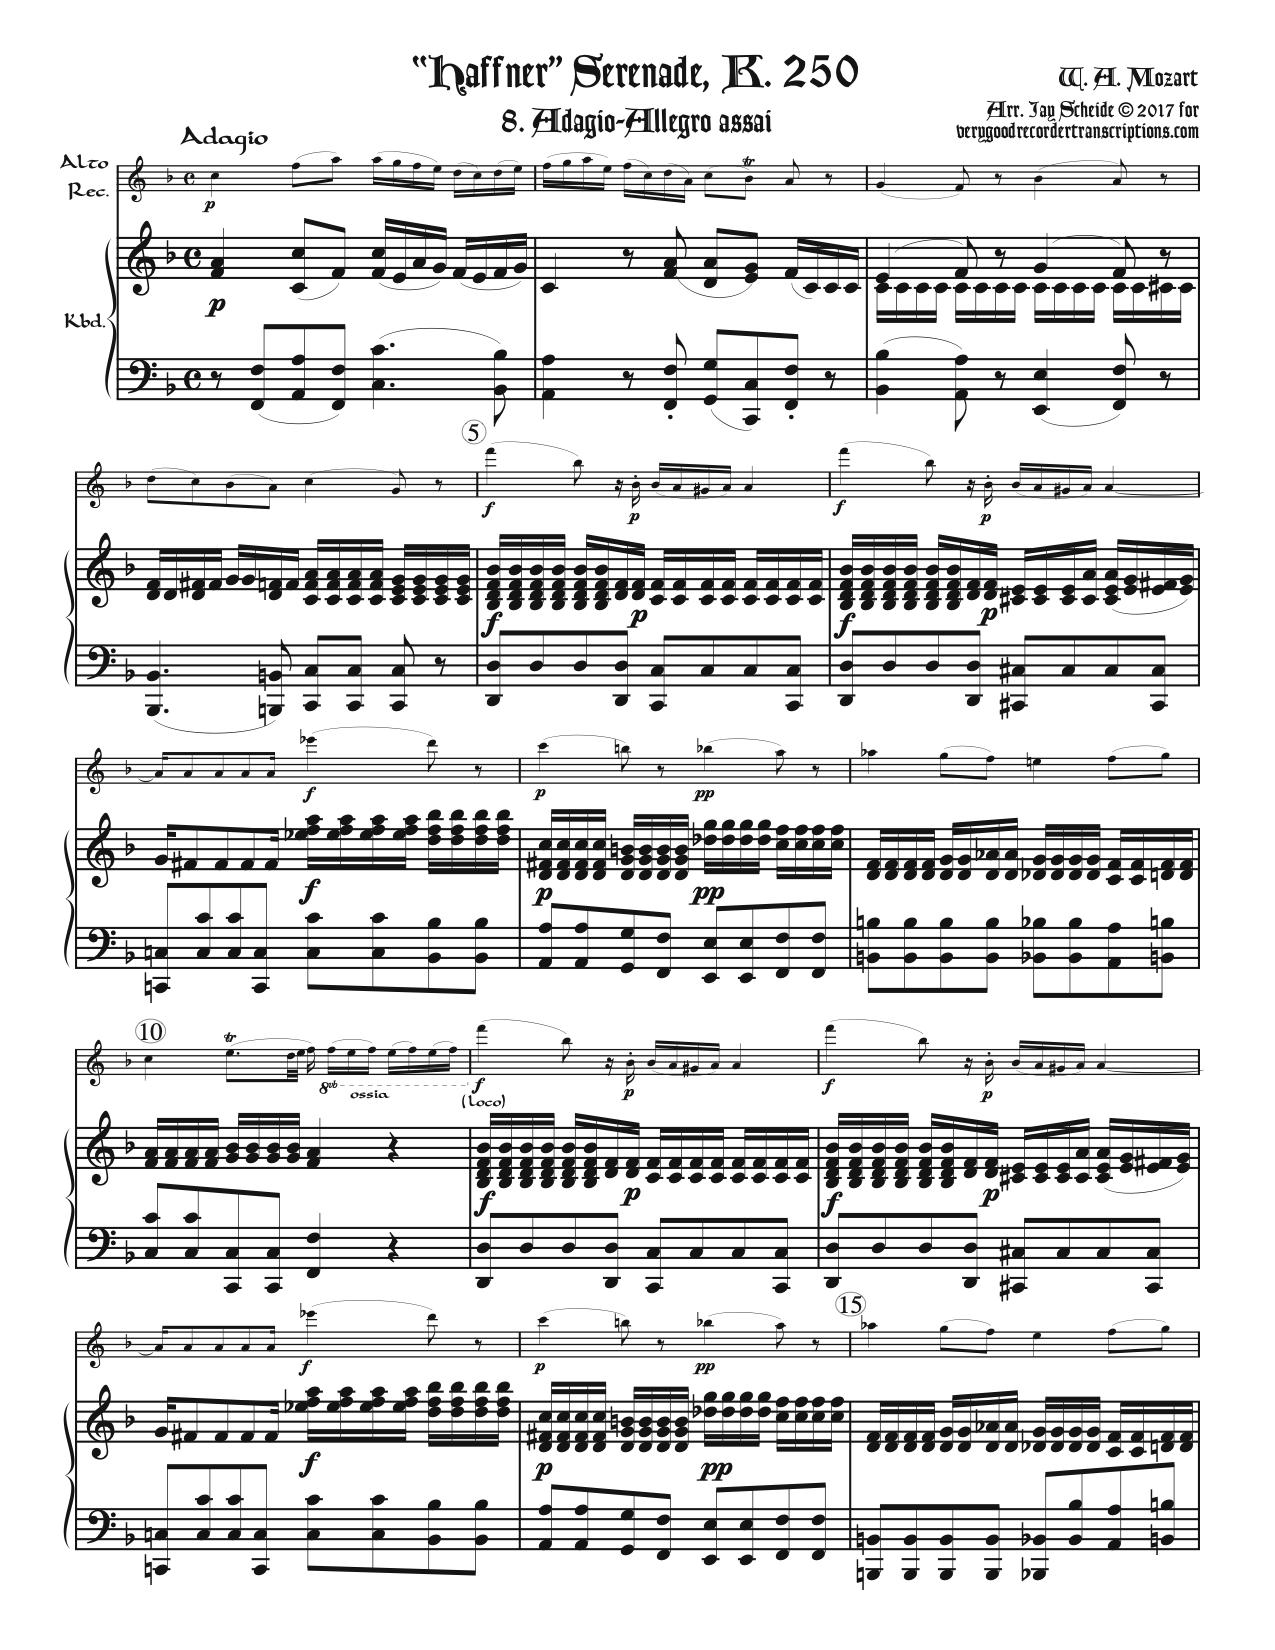 Finale, Adagio-Allegro assai, from “Haffner” Serenade, K. 250